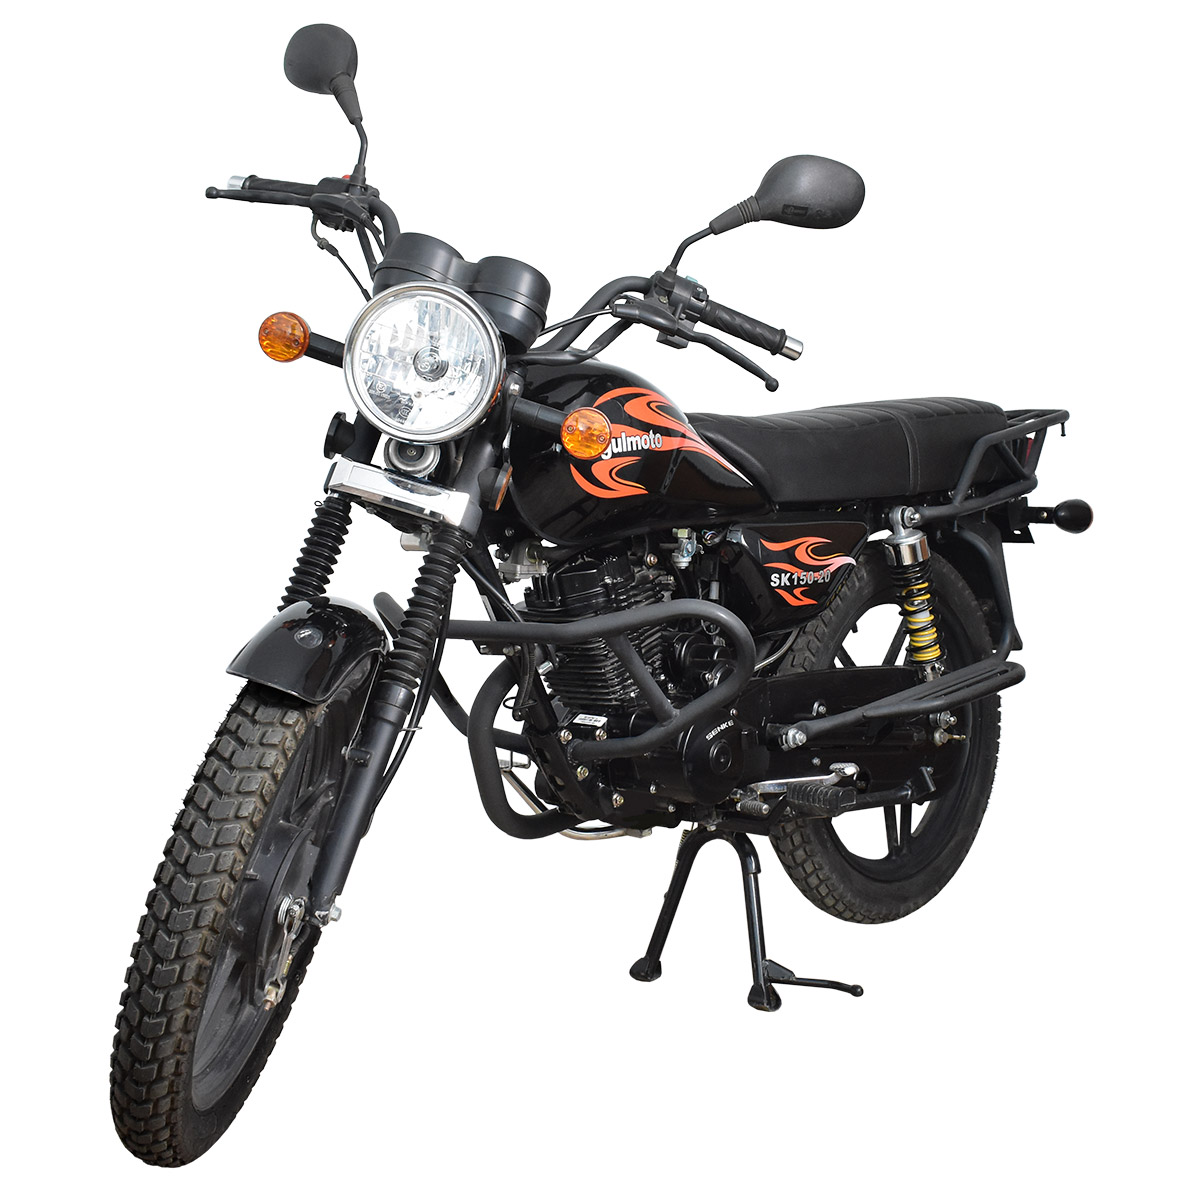 картинка Мотоцикл Regulmoto SK150-20 | Moped24